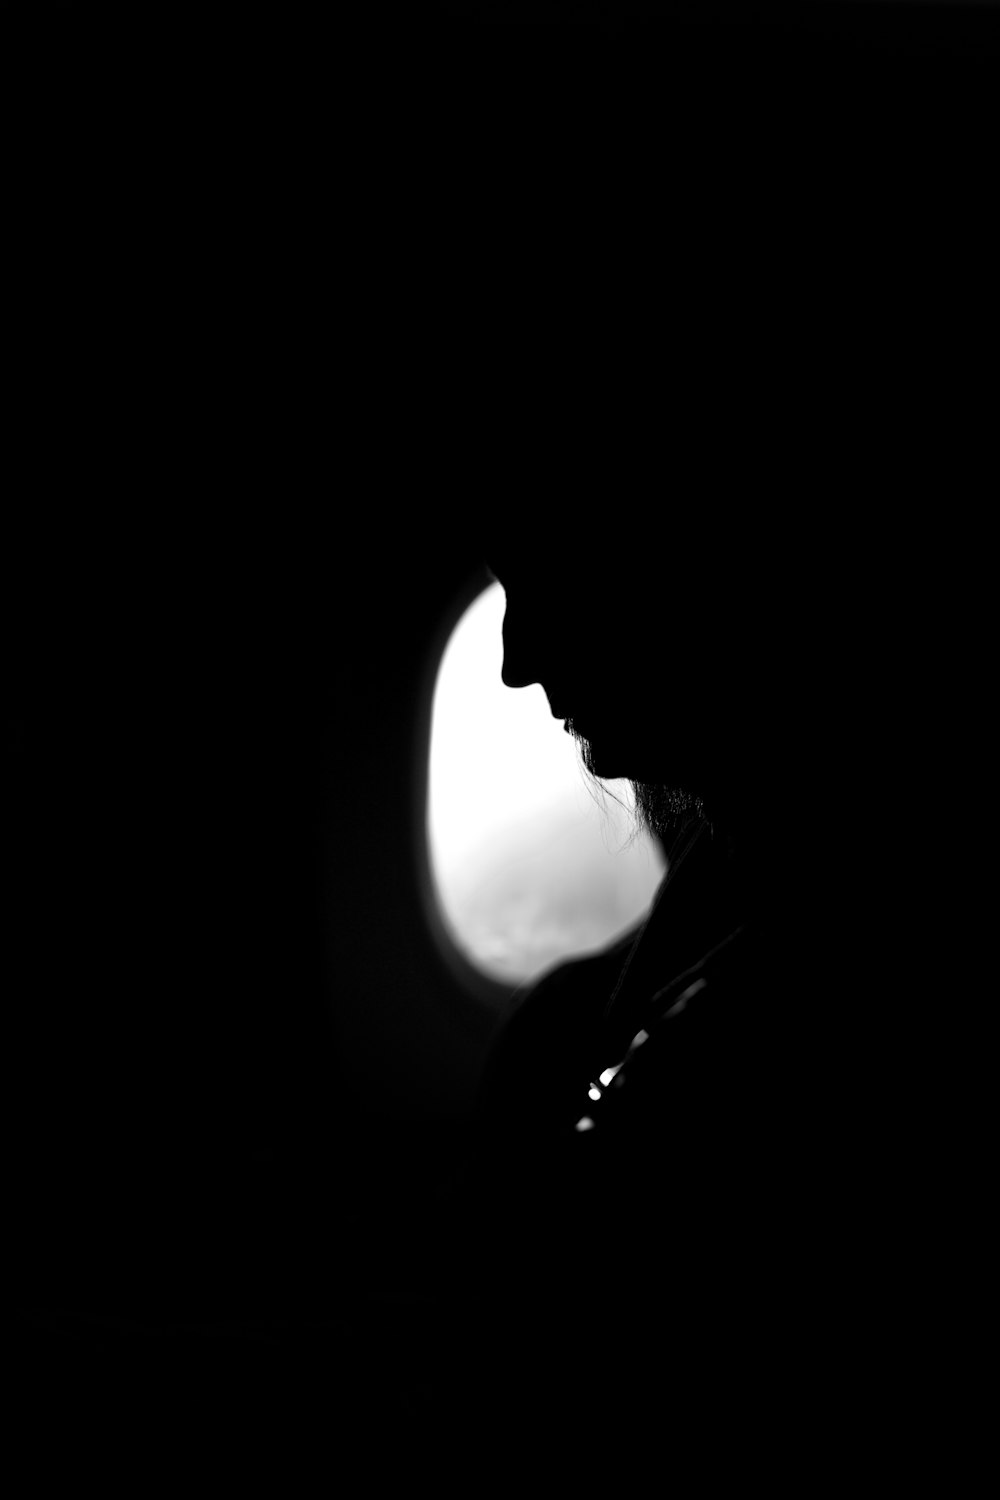 eine Silhouette einer Person in einem dunklen Raum